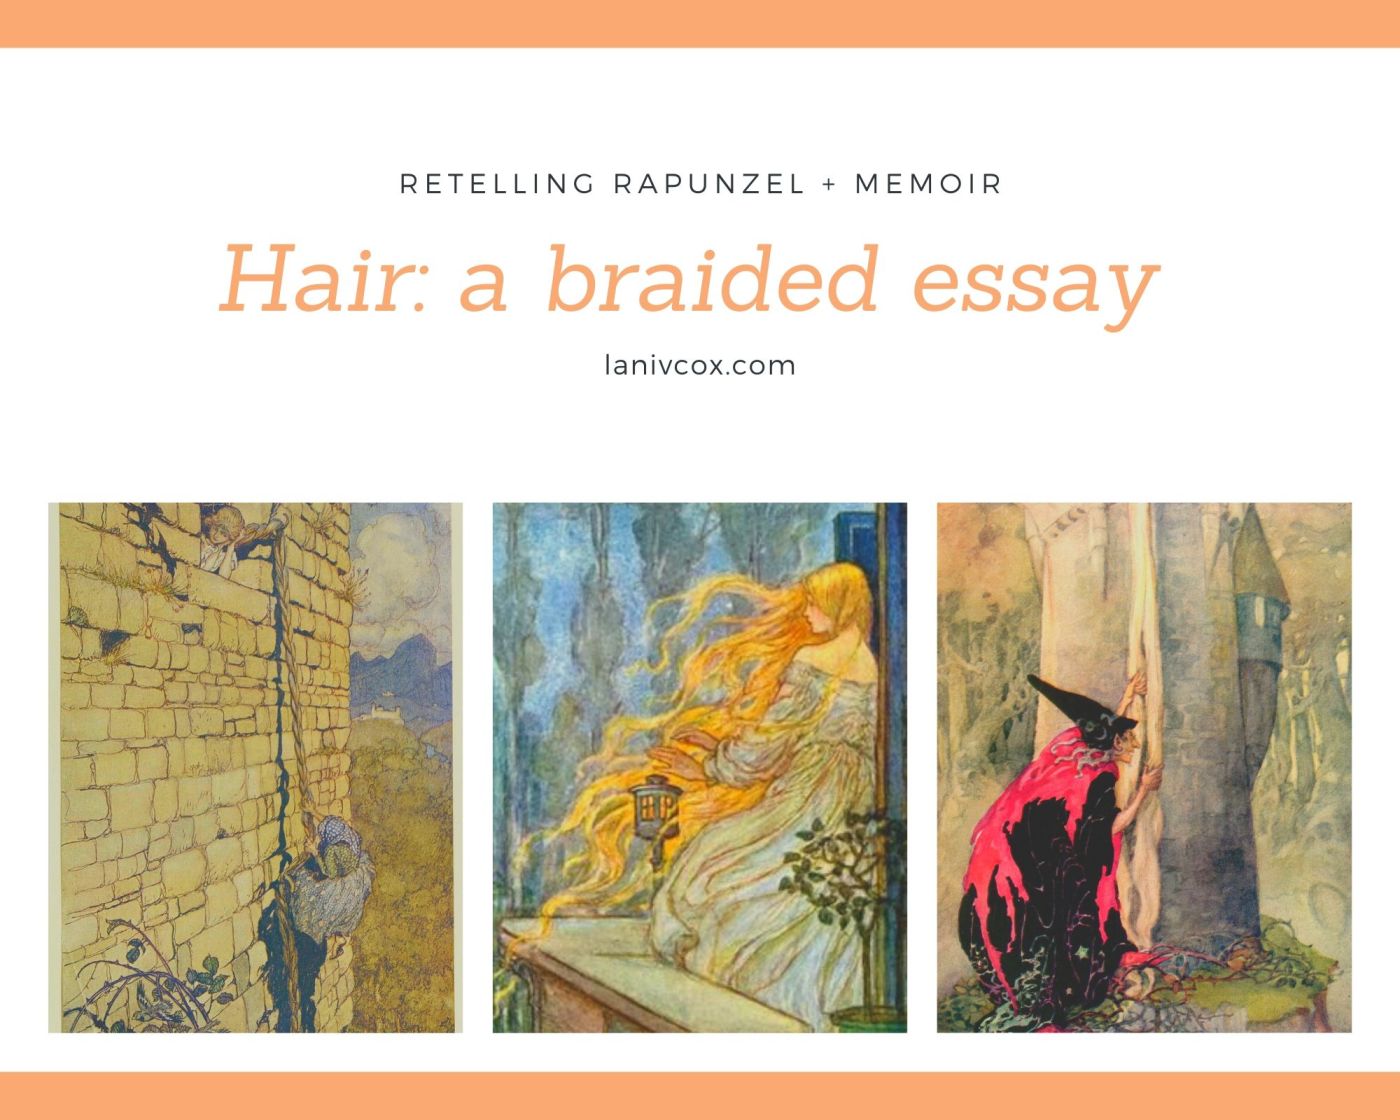 Hair: a braided essay